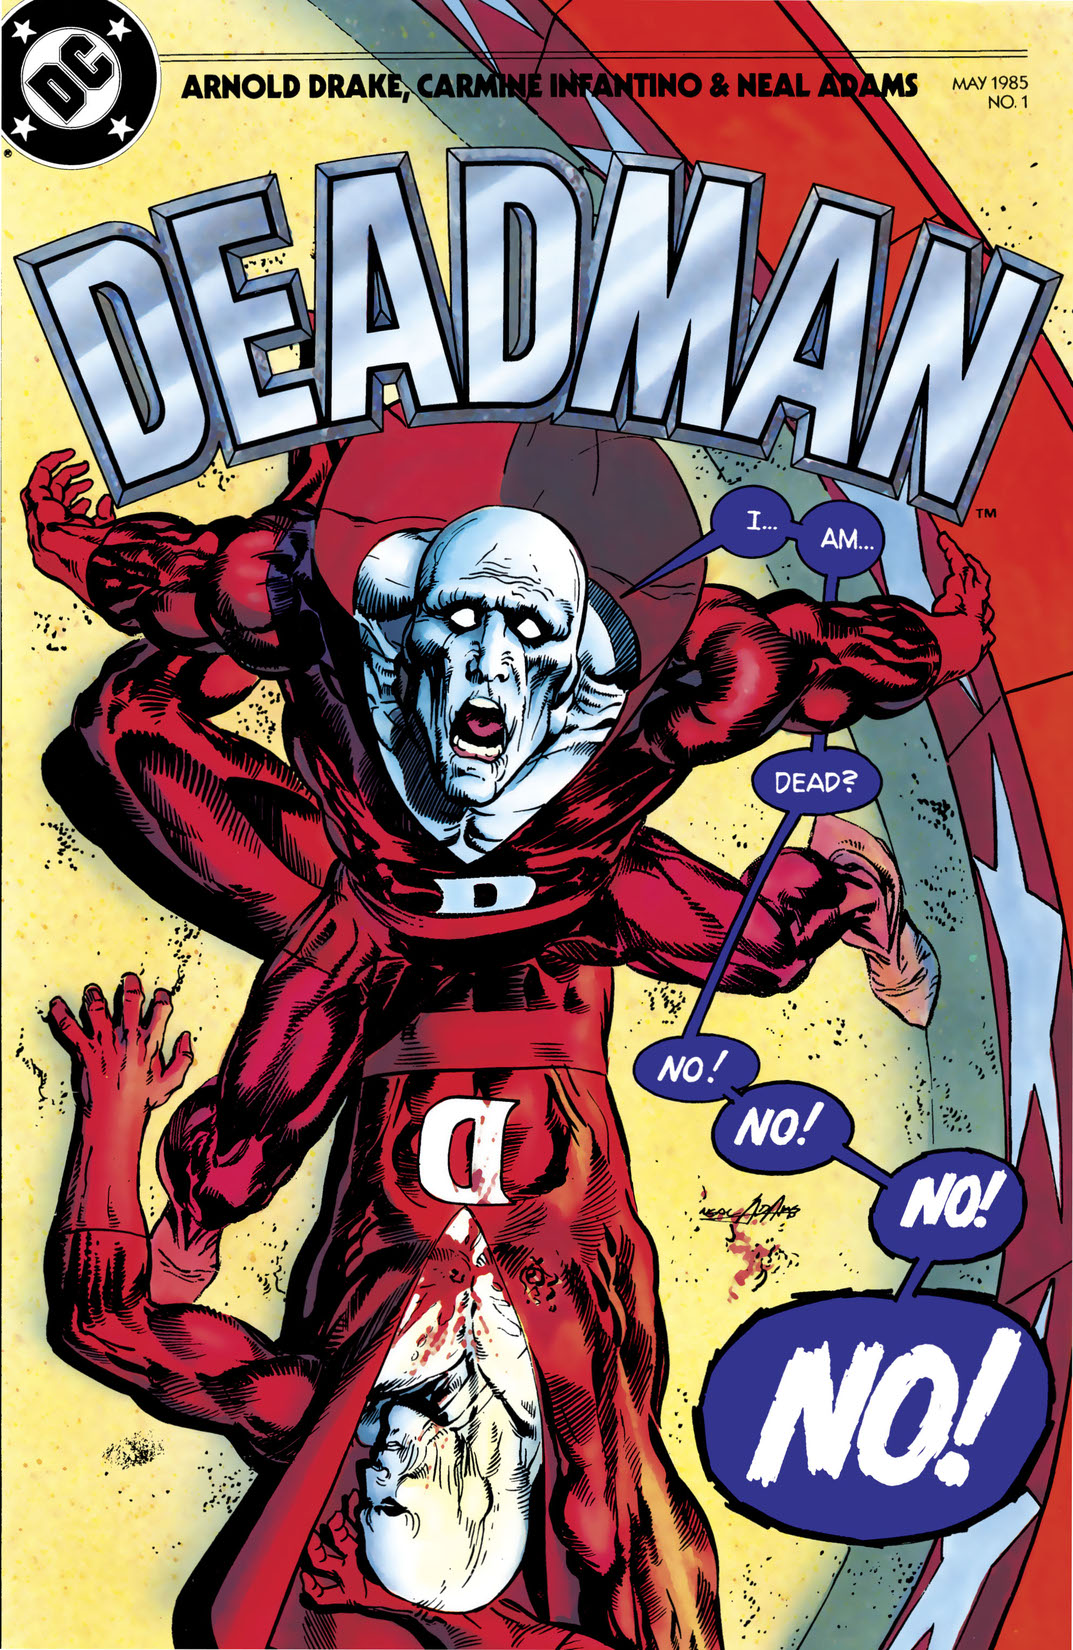 Deadman (1985-1985) #1 preview images